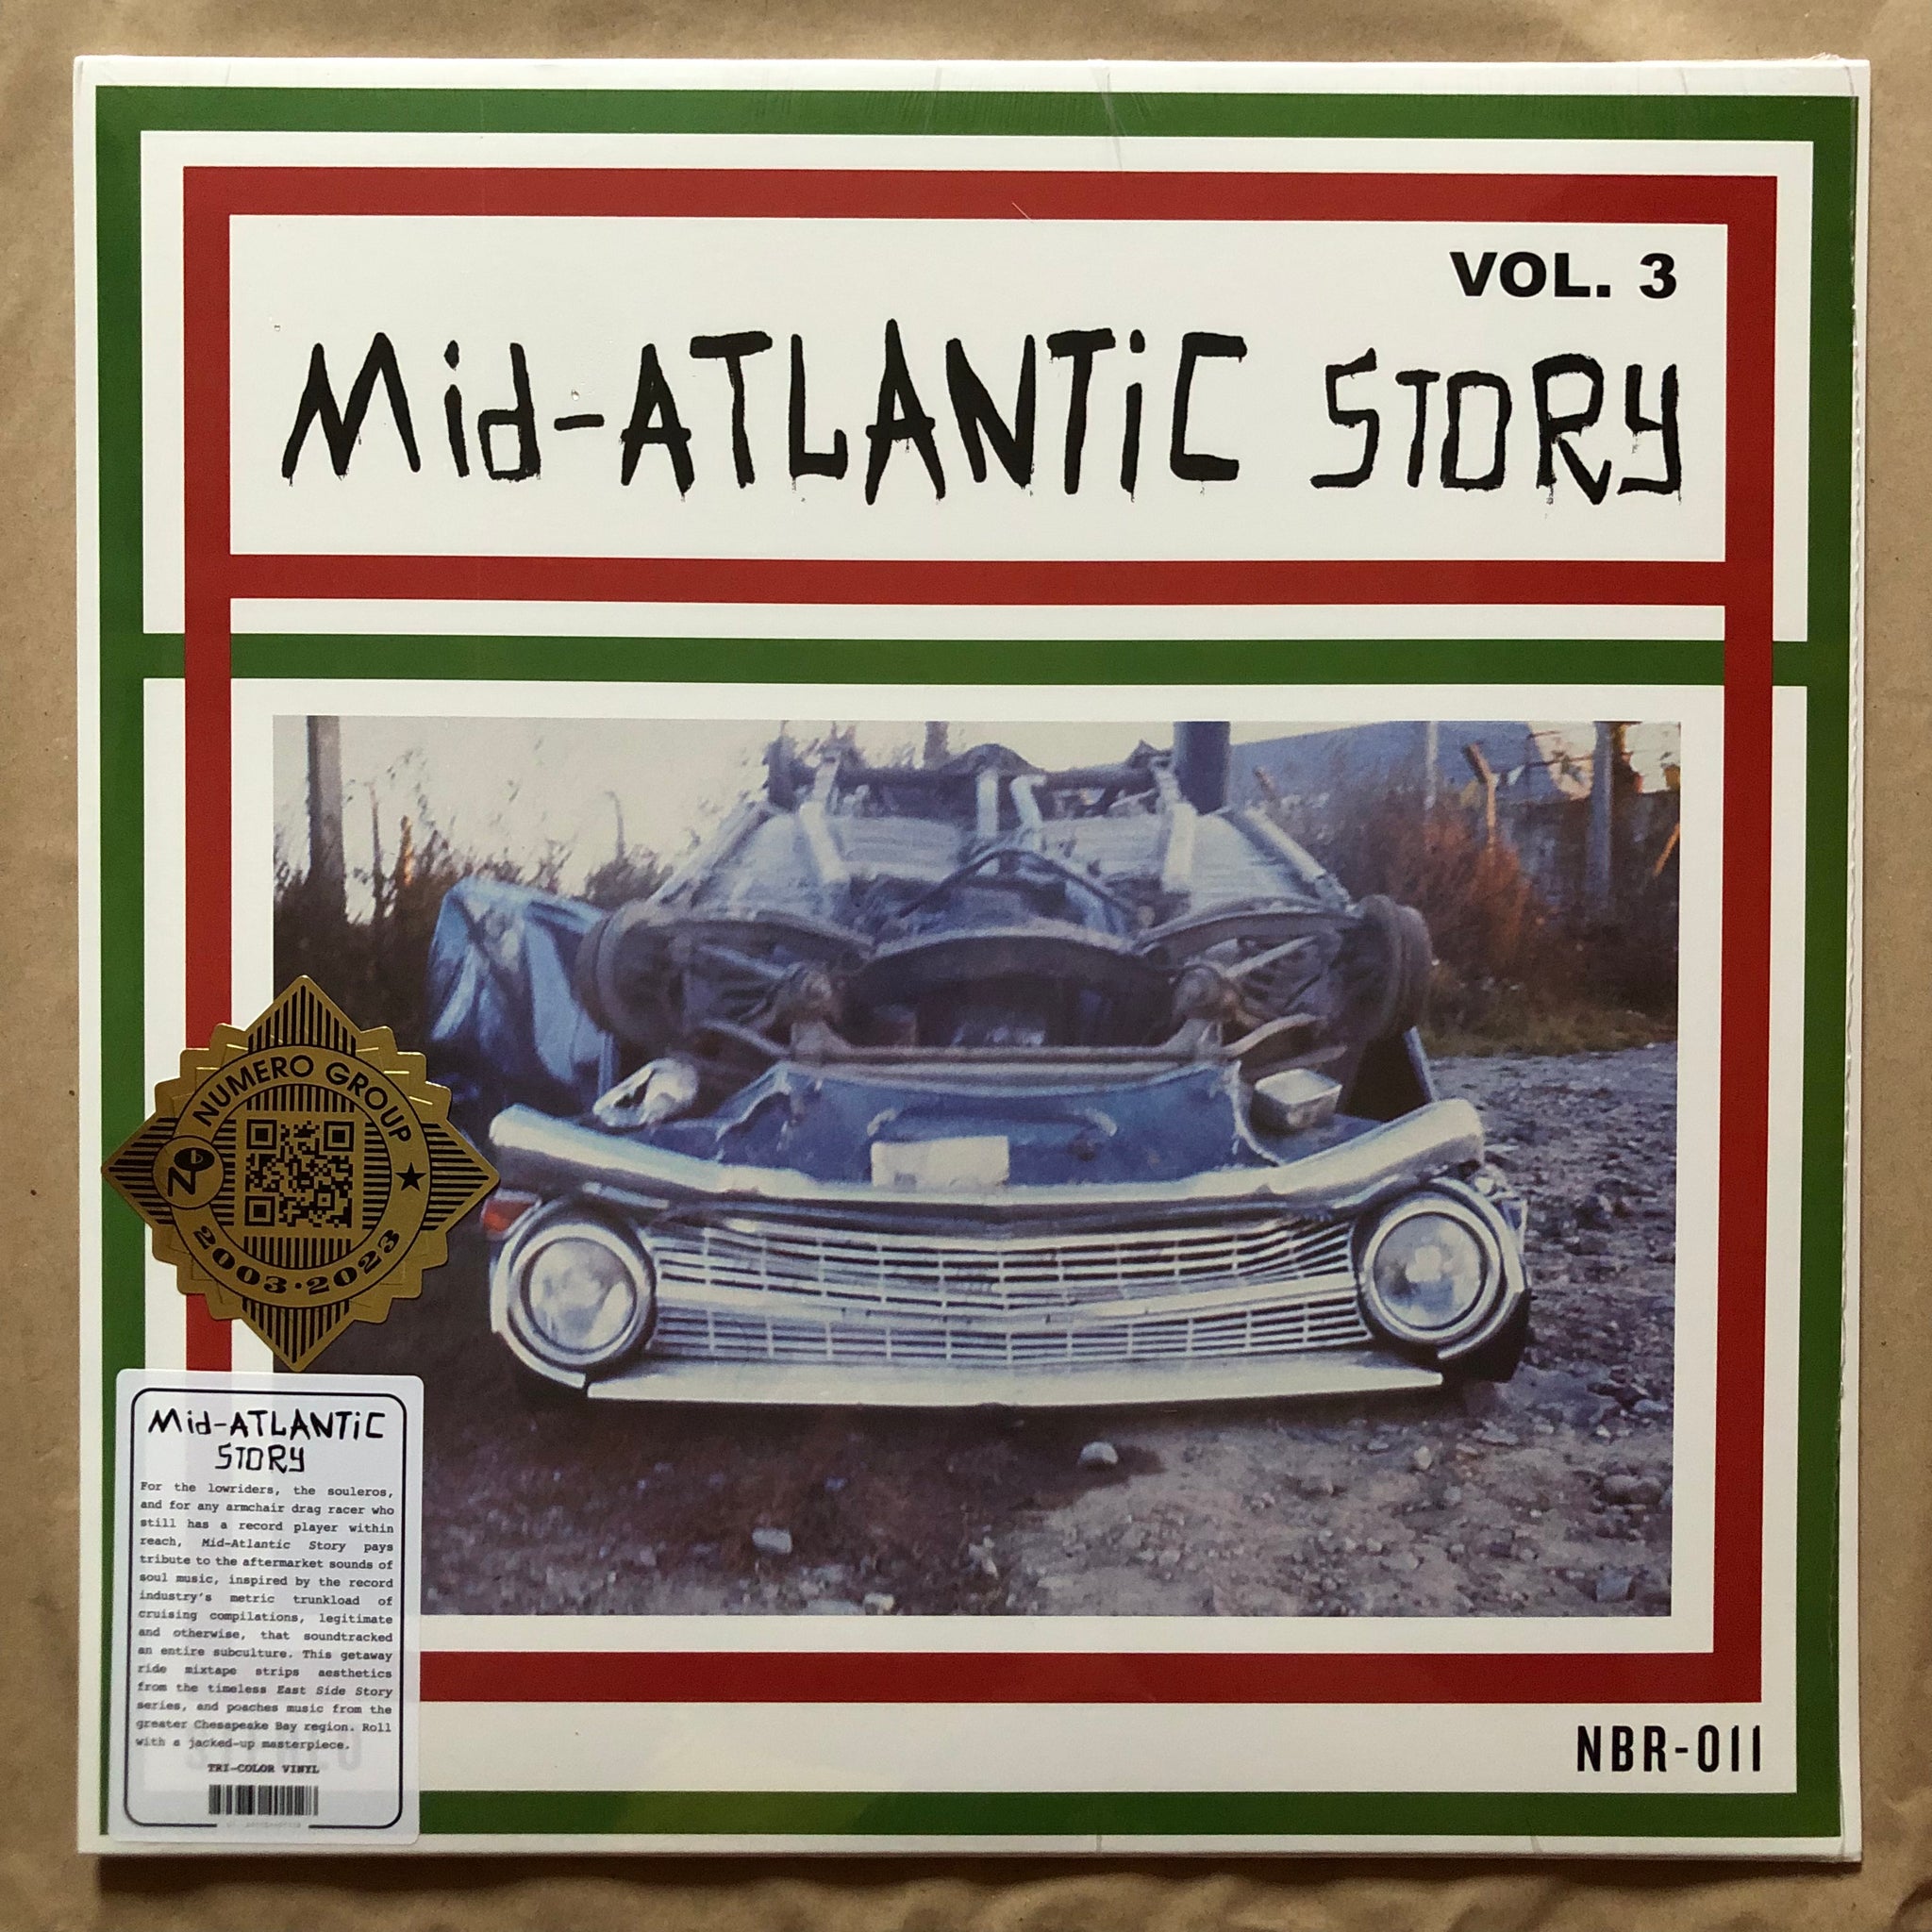 Mid-Atlantic Story Vol. 3: Tr-Colour Vinyl LP